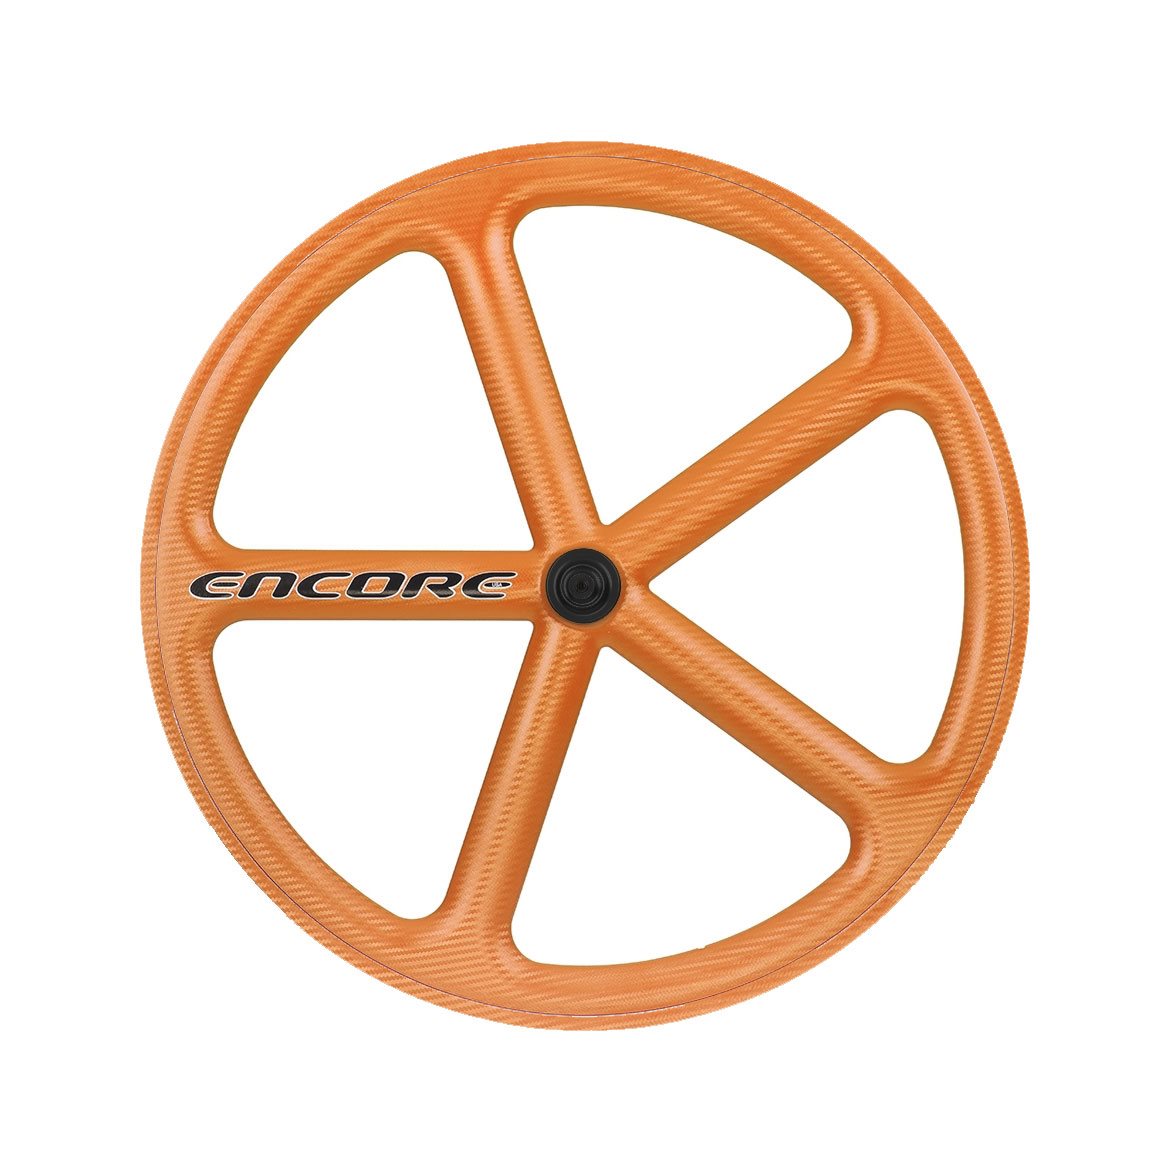 Hinterrad 700c Track 5-Speichen Carbon-Gewebe orange nmsw